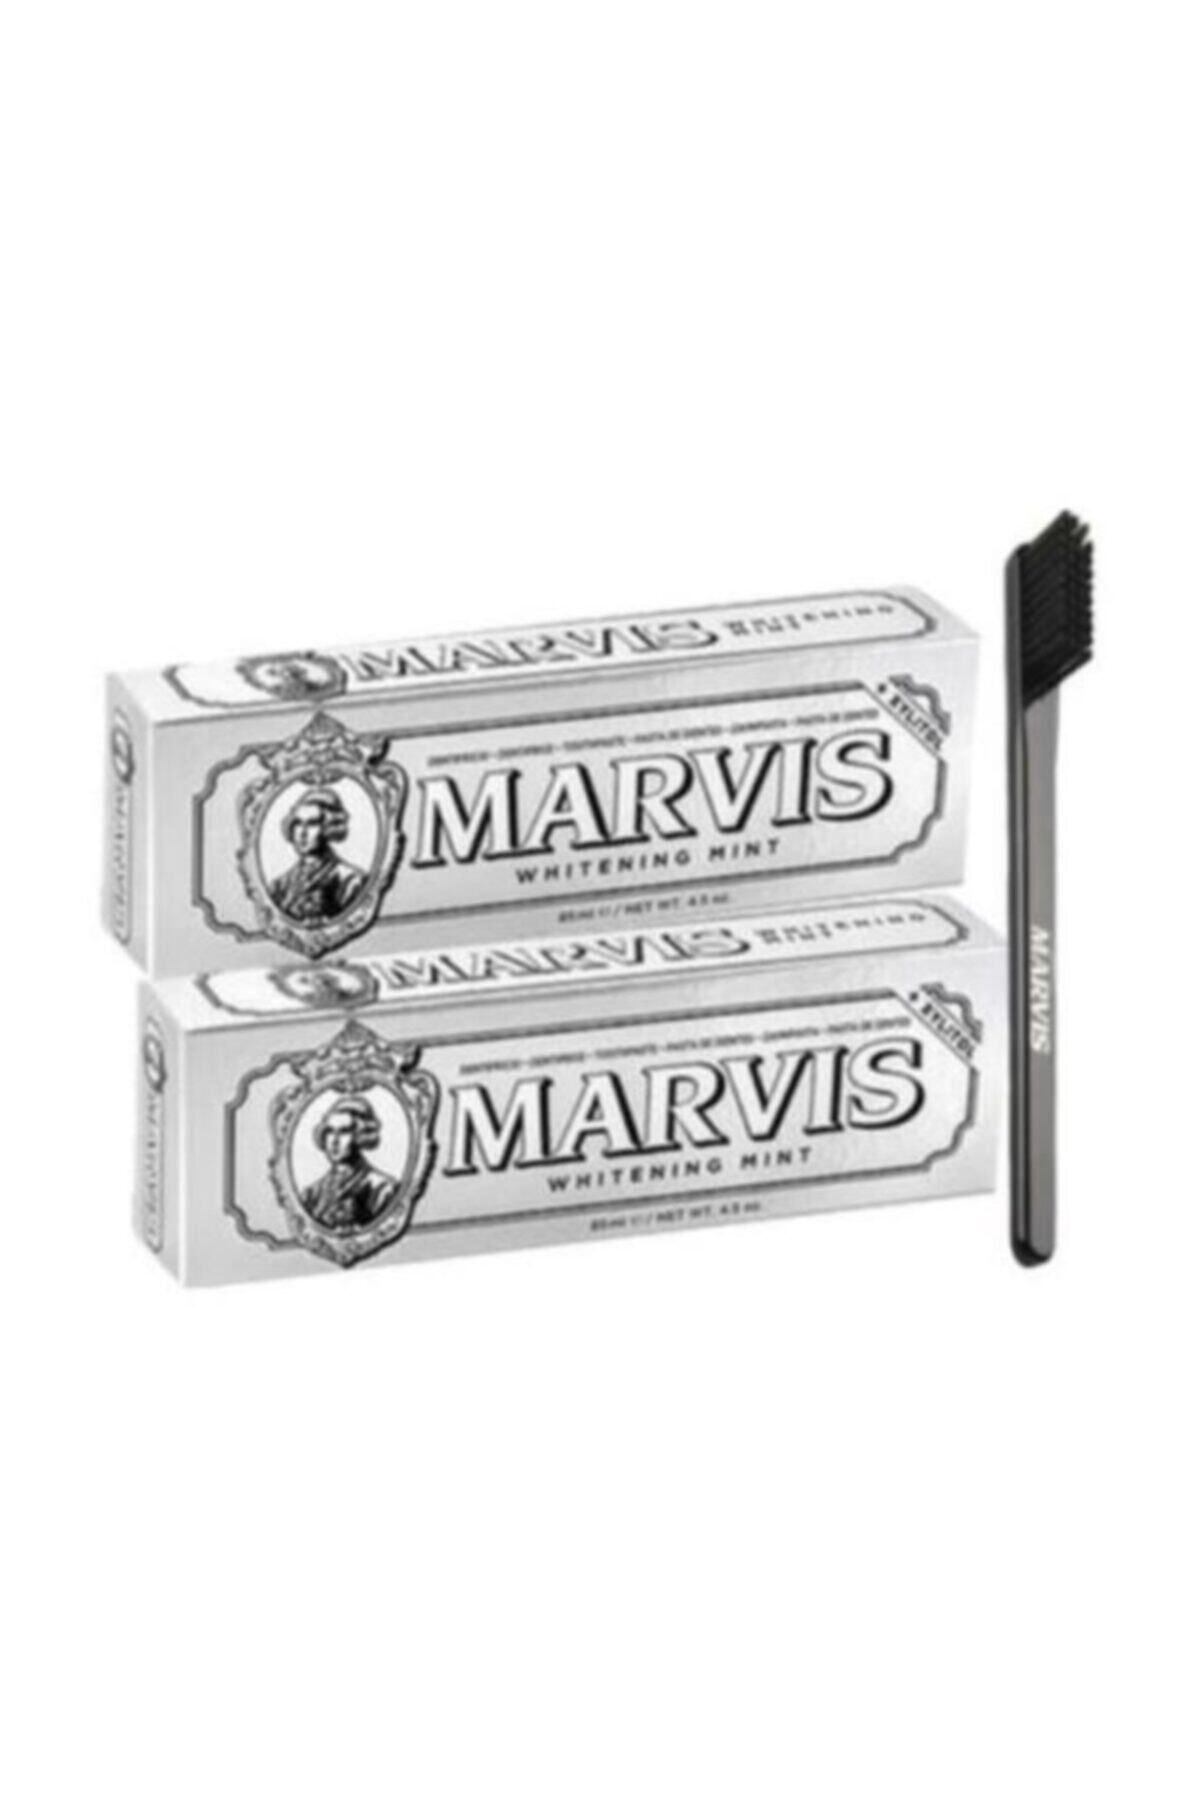 Marvis Whitening Mint Beyazlatıcı Diş Macunu 2 X 85 Ml Ve Black Mediım Orta Sert Diş Fırçası 1 Adet